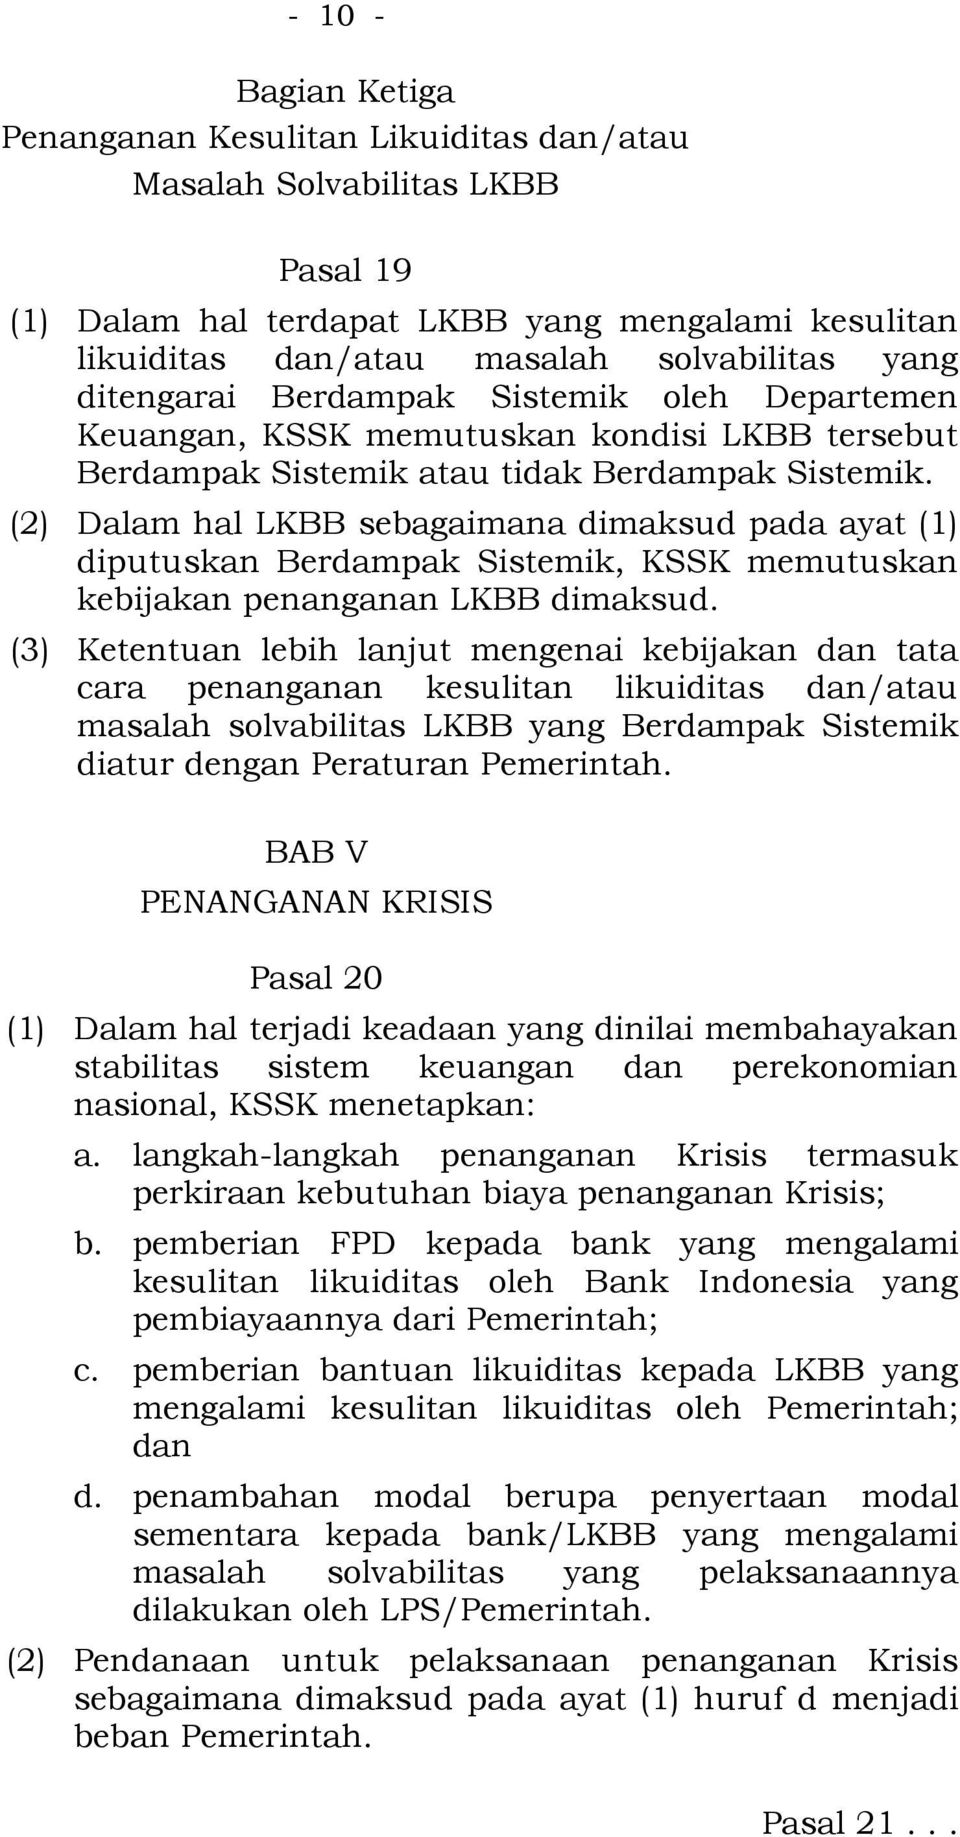 (2) Dalam hal LKBB sebagaimana dimaksud pada ayat (1) diputuskan Berdampak Sistemik, KSSK memutuskan kebijakan penanganan LKBB dimaksud.